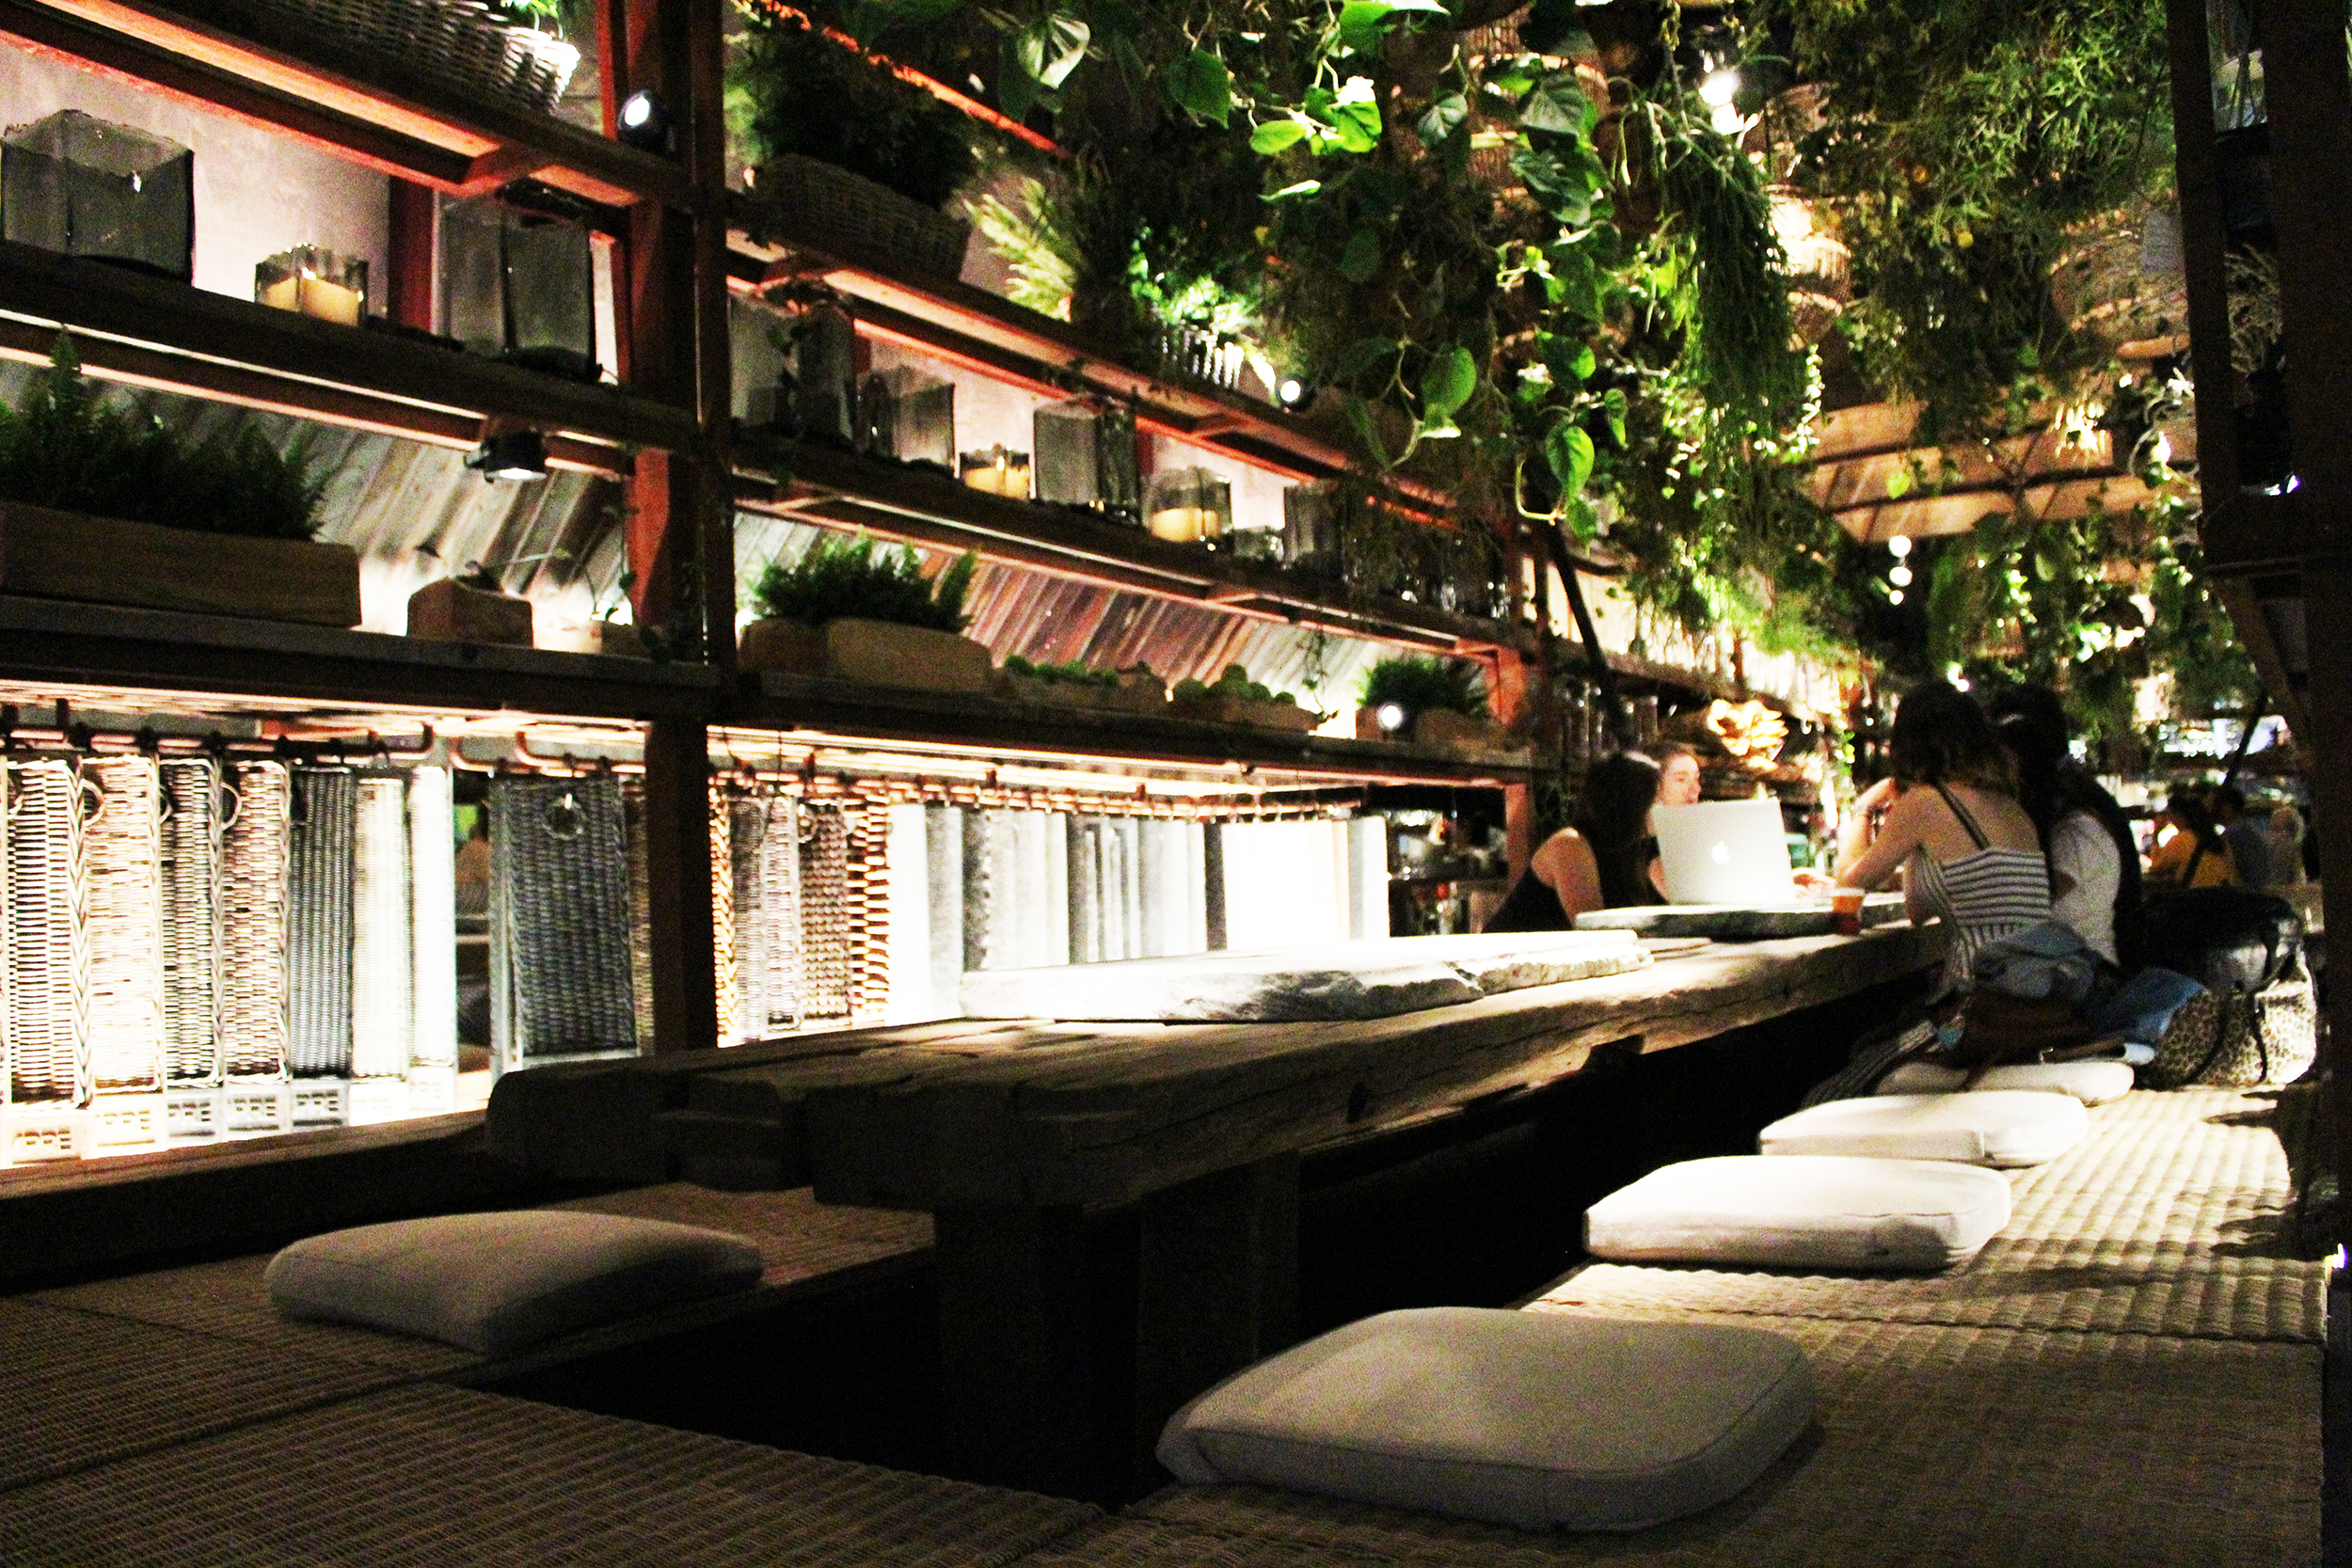 Une nature luxuriante et omniprésente en particulier au plafond avec une profusion de plantes suspendues. Les bancs sont constitués de tatamis japonais équipés de coussins carrés en toile de jute.